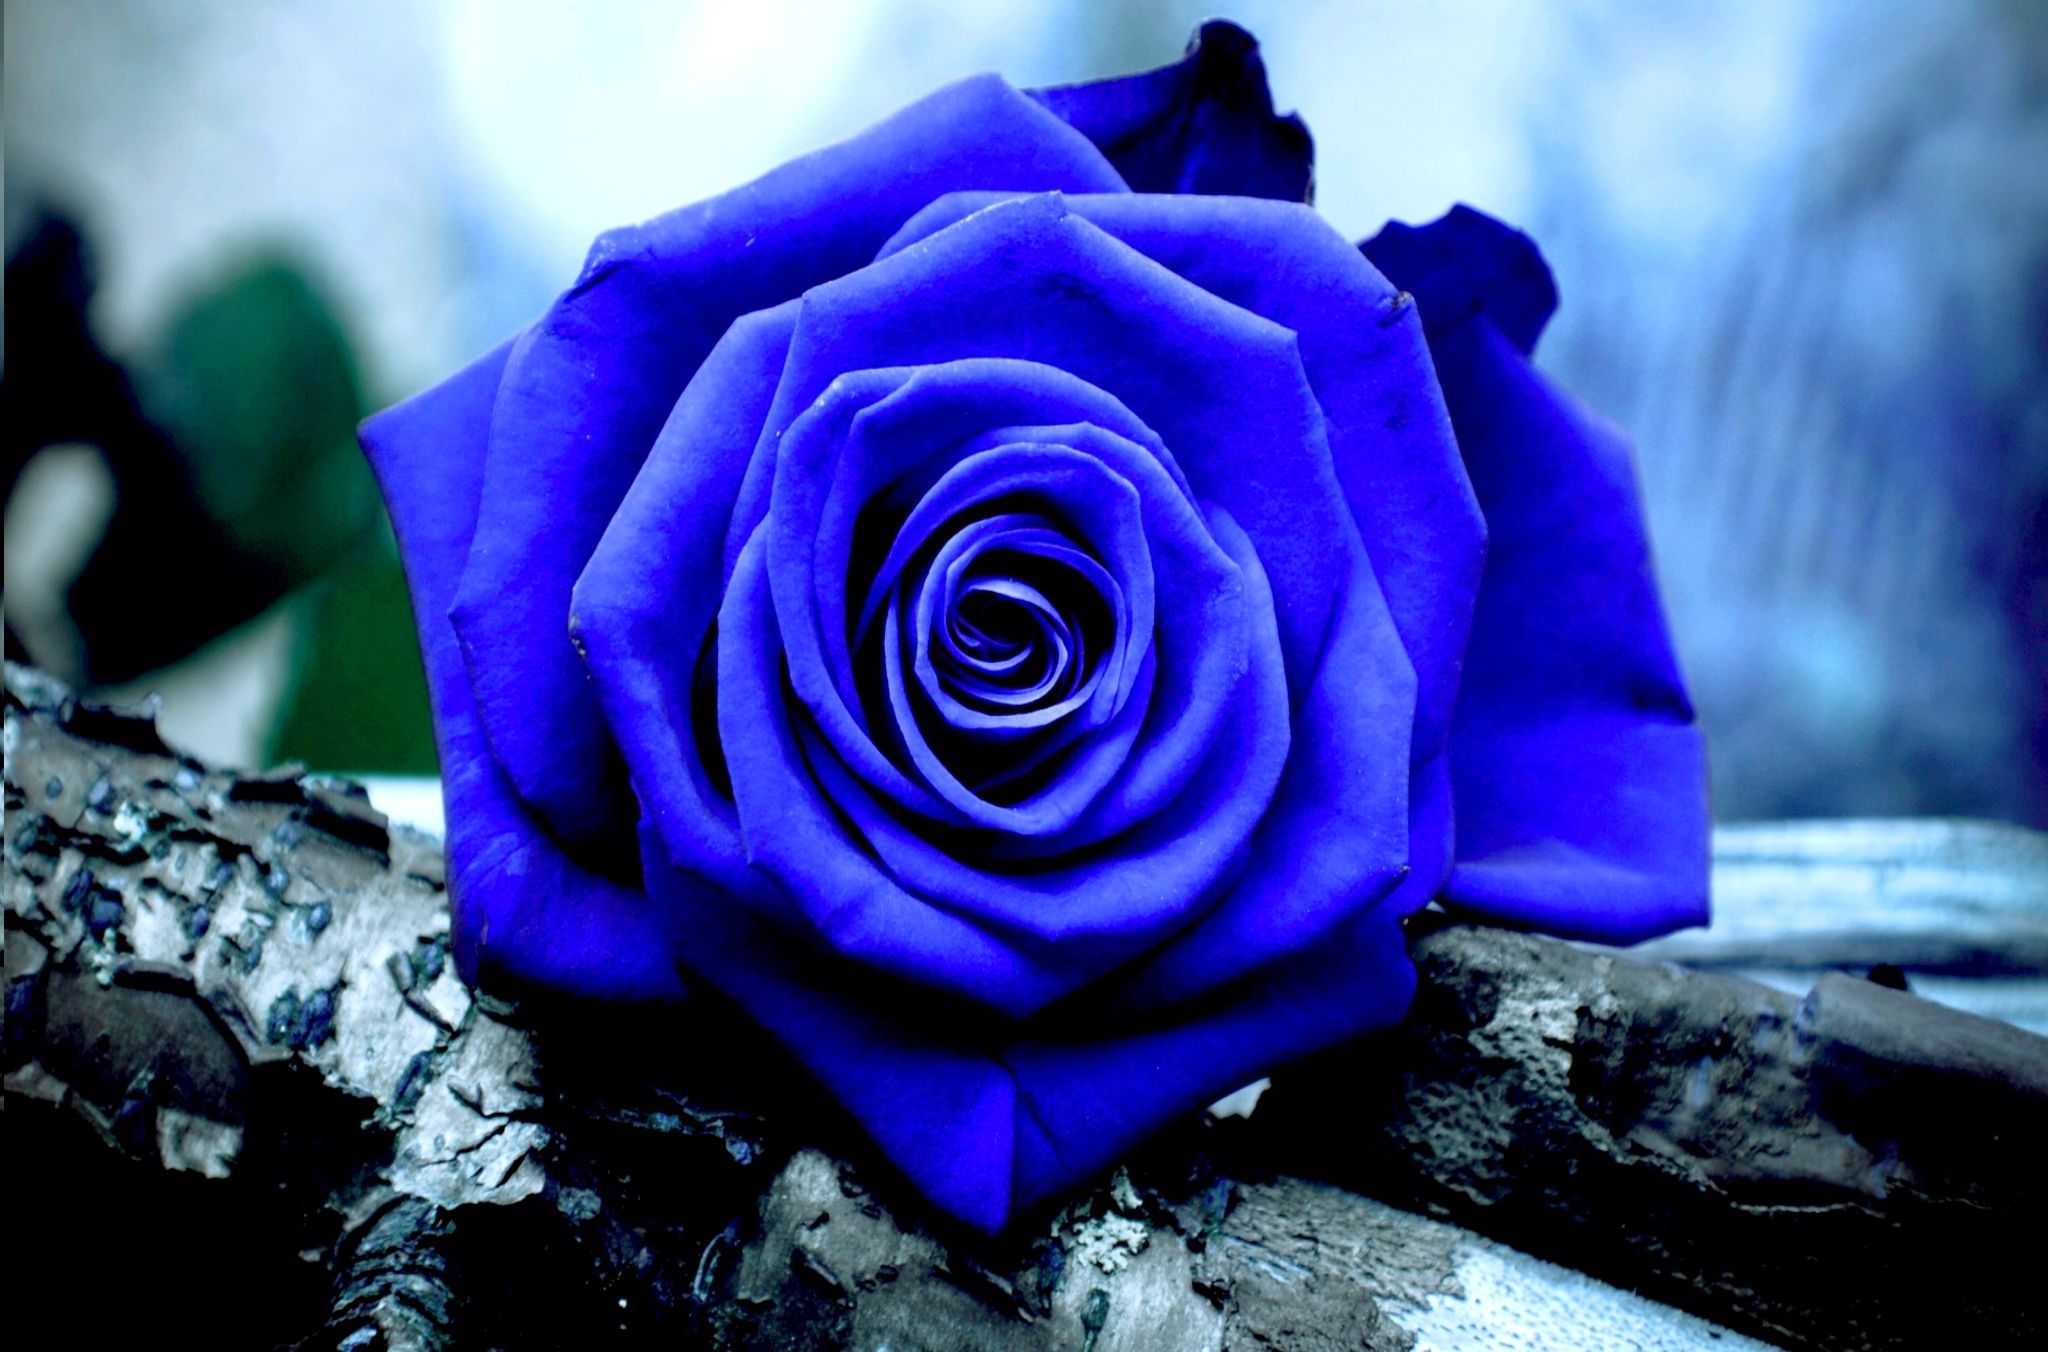 rose wallpaper rose wallpaper,flower,rose,flowering plant,blue,garden roses